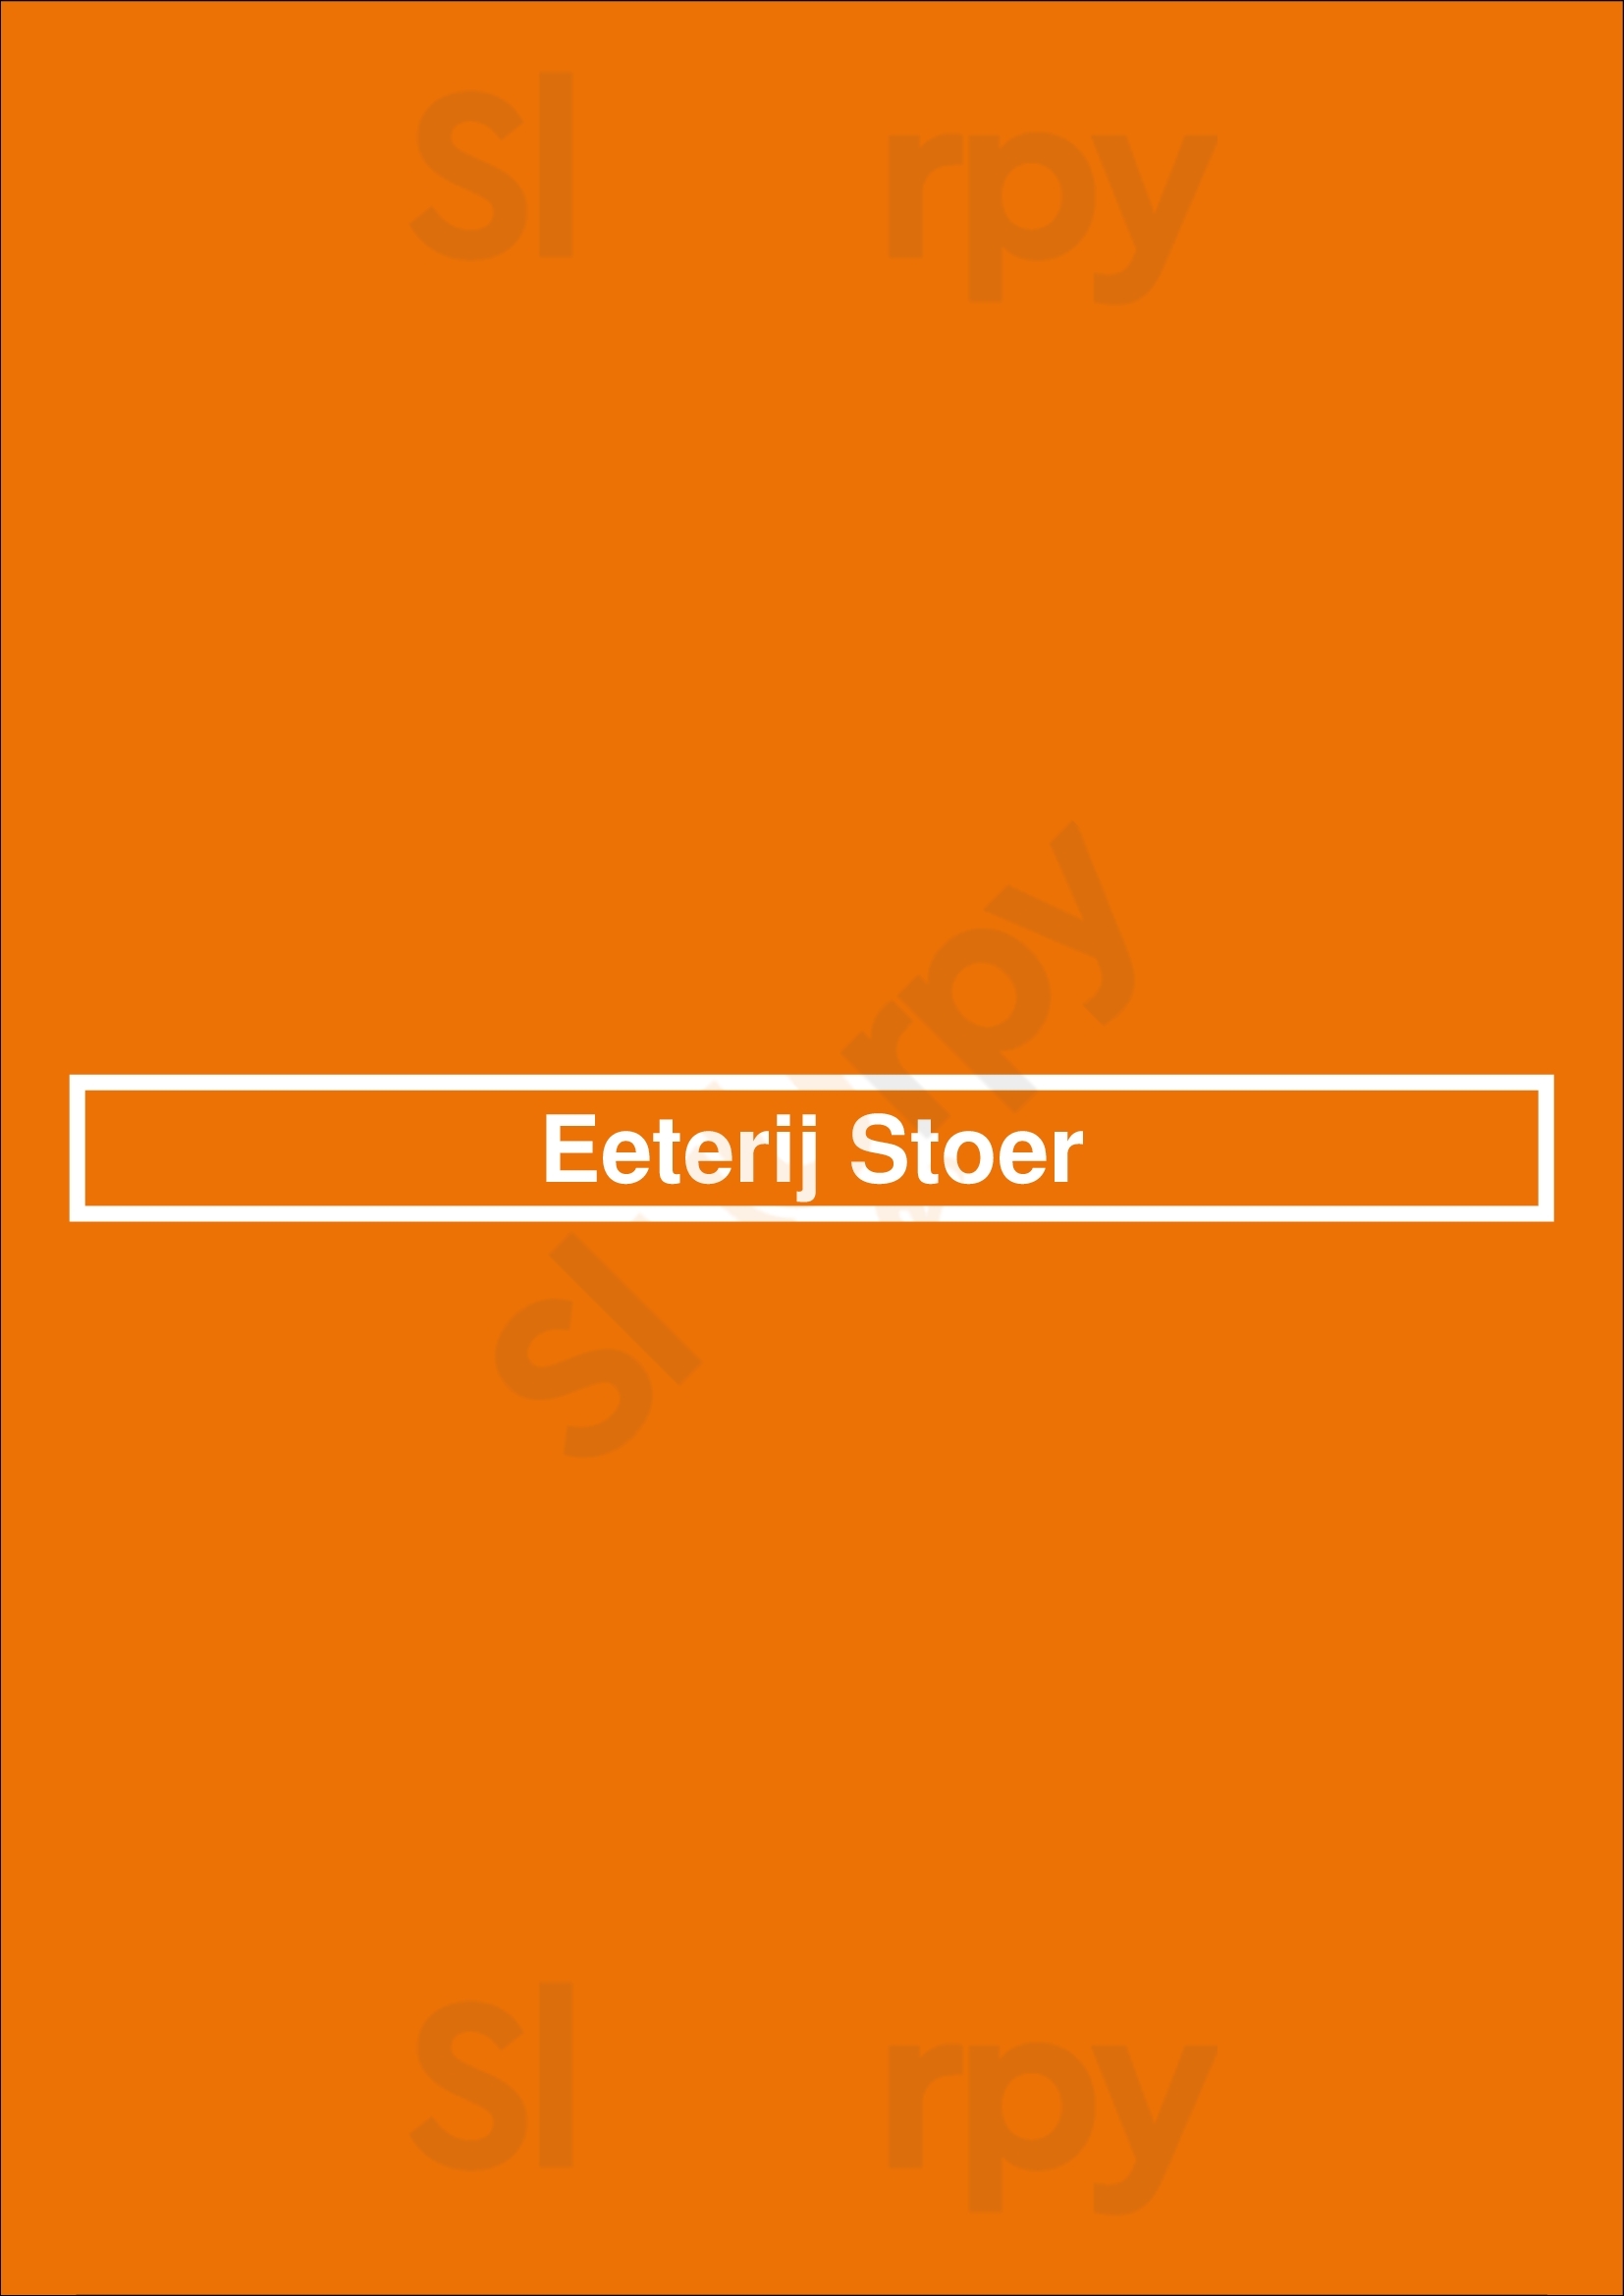 Eeterij Stoer Boekel Menu - 1